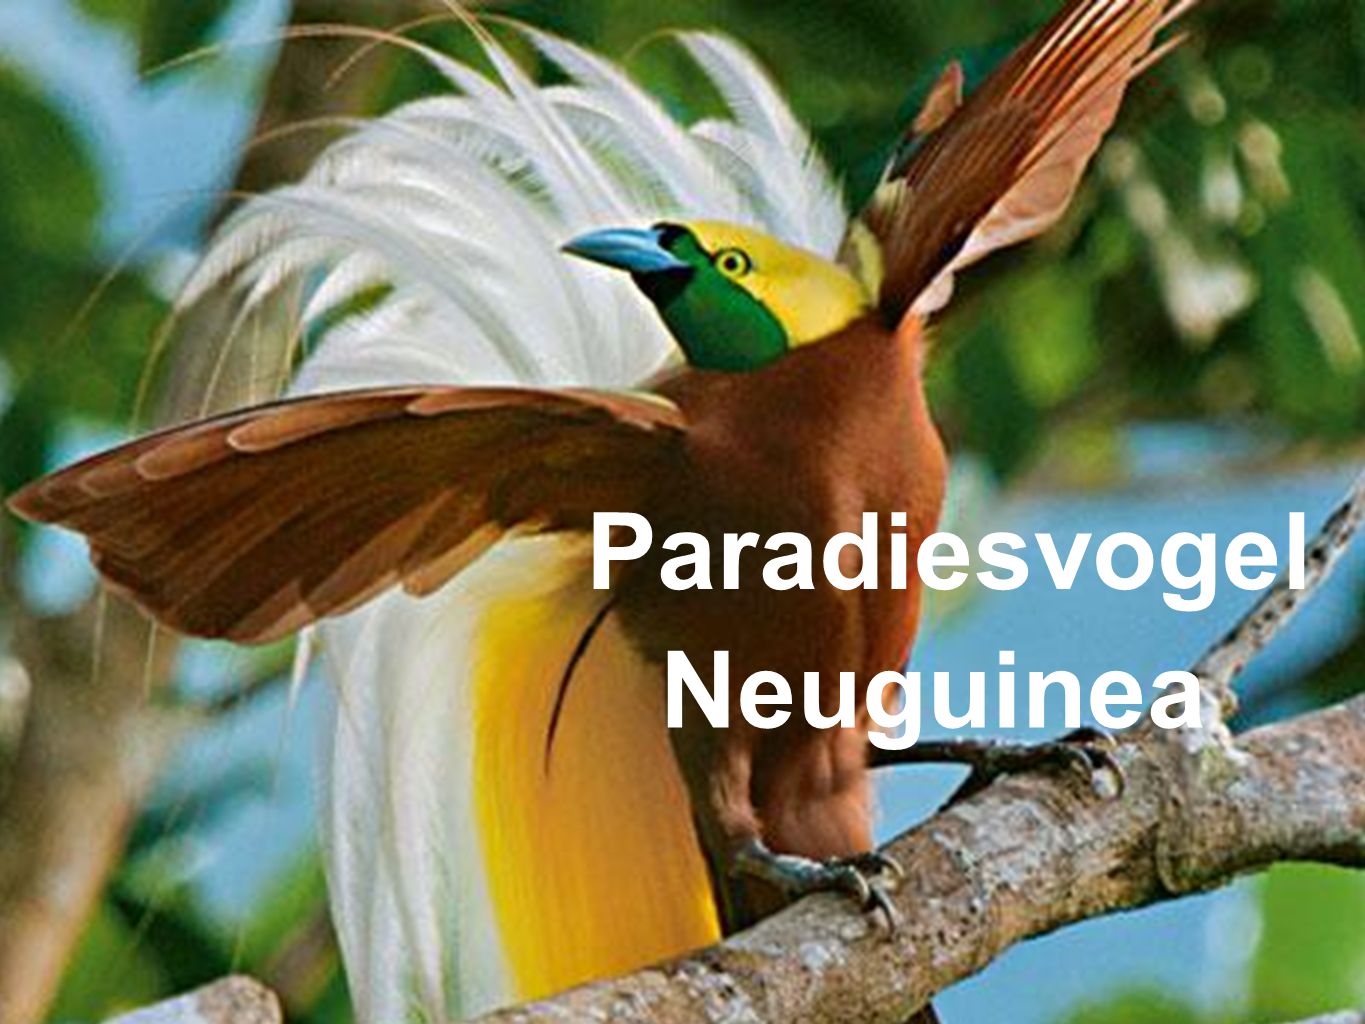 Paradiesvogel Neuguinea